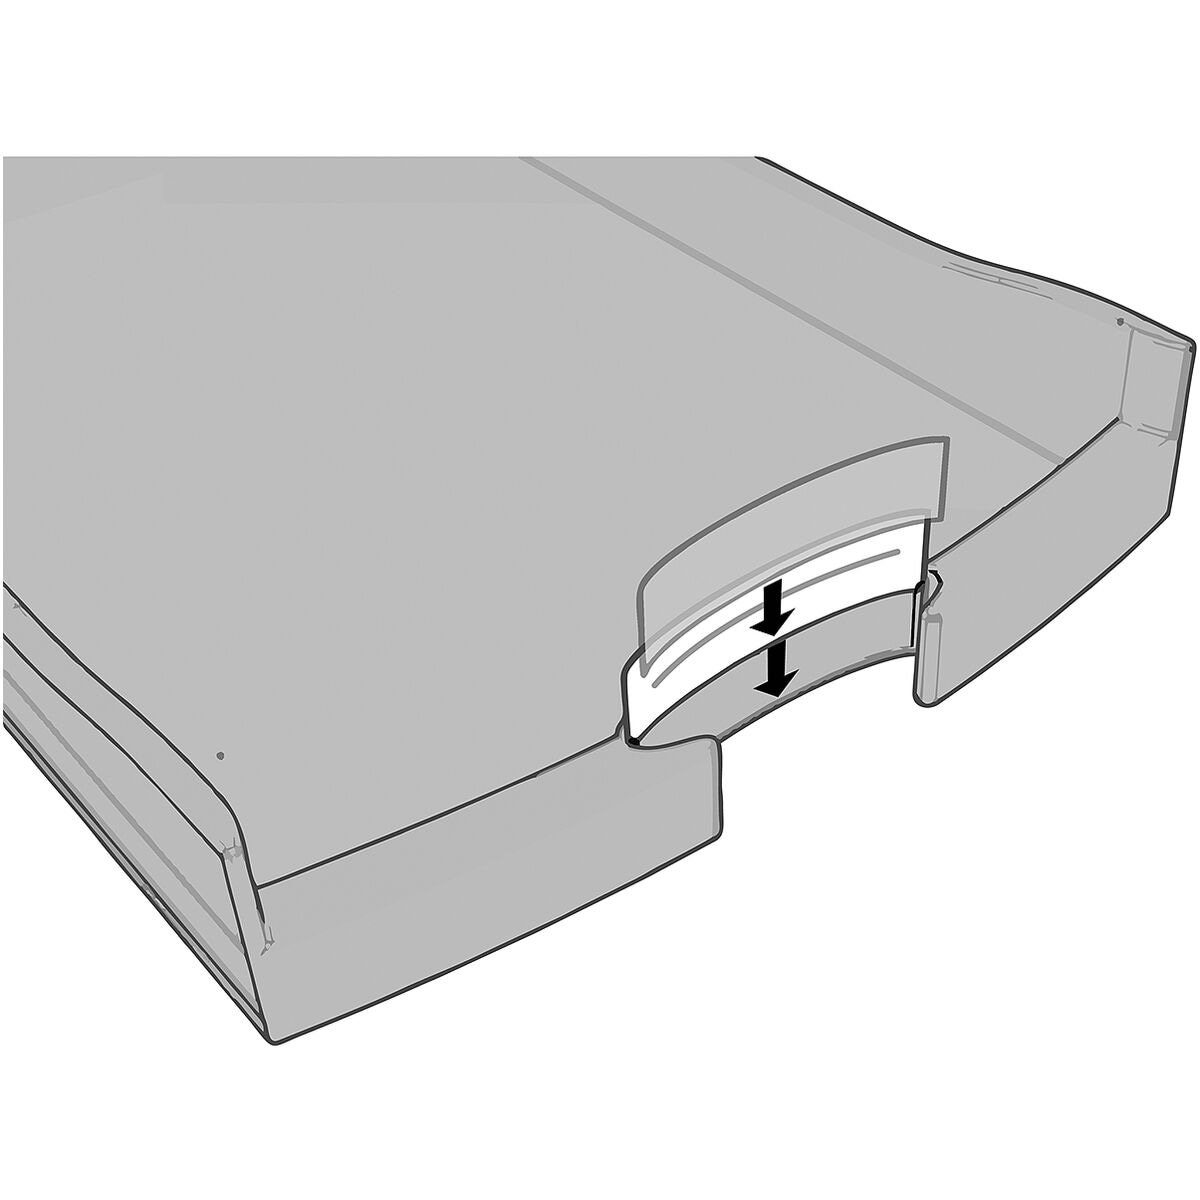 HAN Schubladenbox Impuls, mit 4 stapelbar Schubladen, blau offen